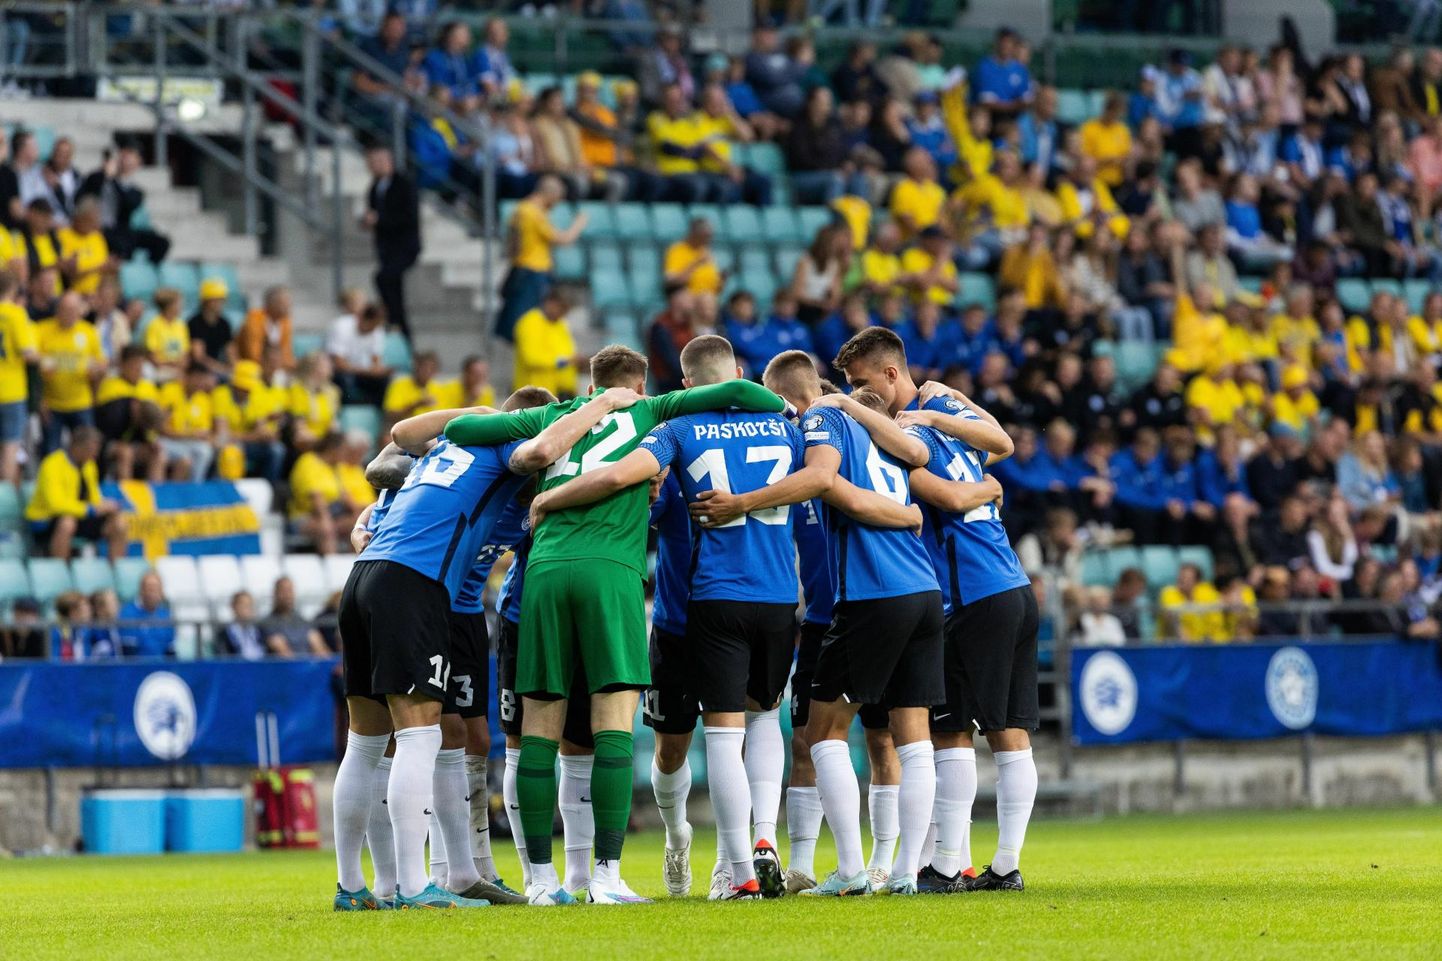 Eesti jalgpallikoondis kohtub täna EM-valikturniiri play-off’i poolfinaalis Poolaga.